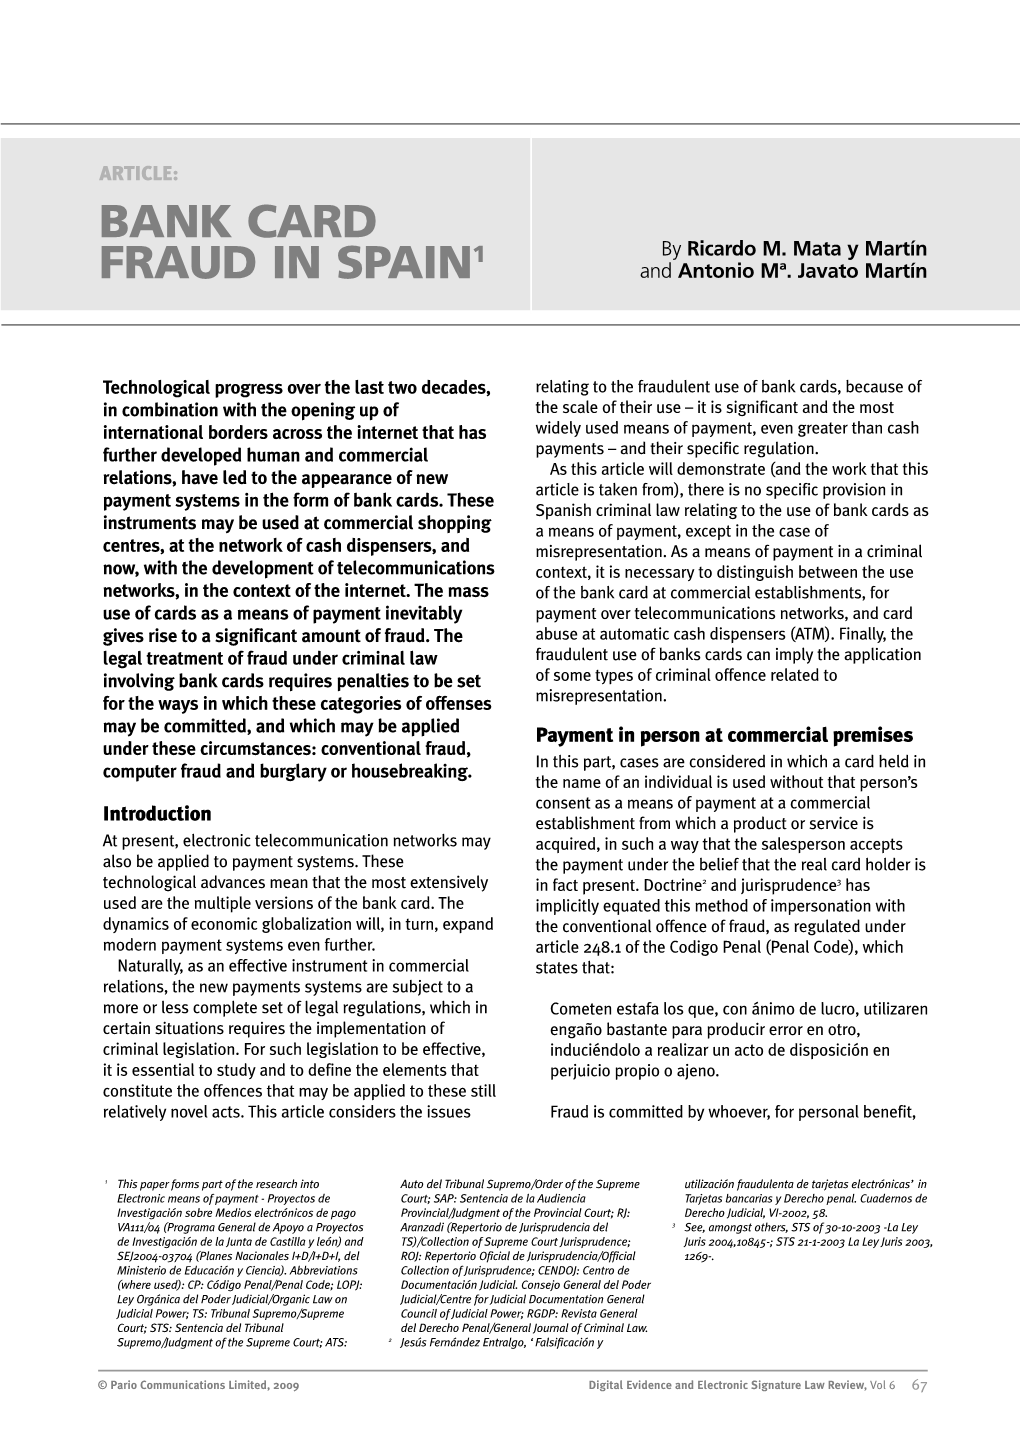 Bank Card Fraud in Spain1